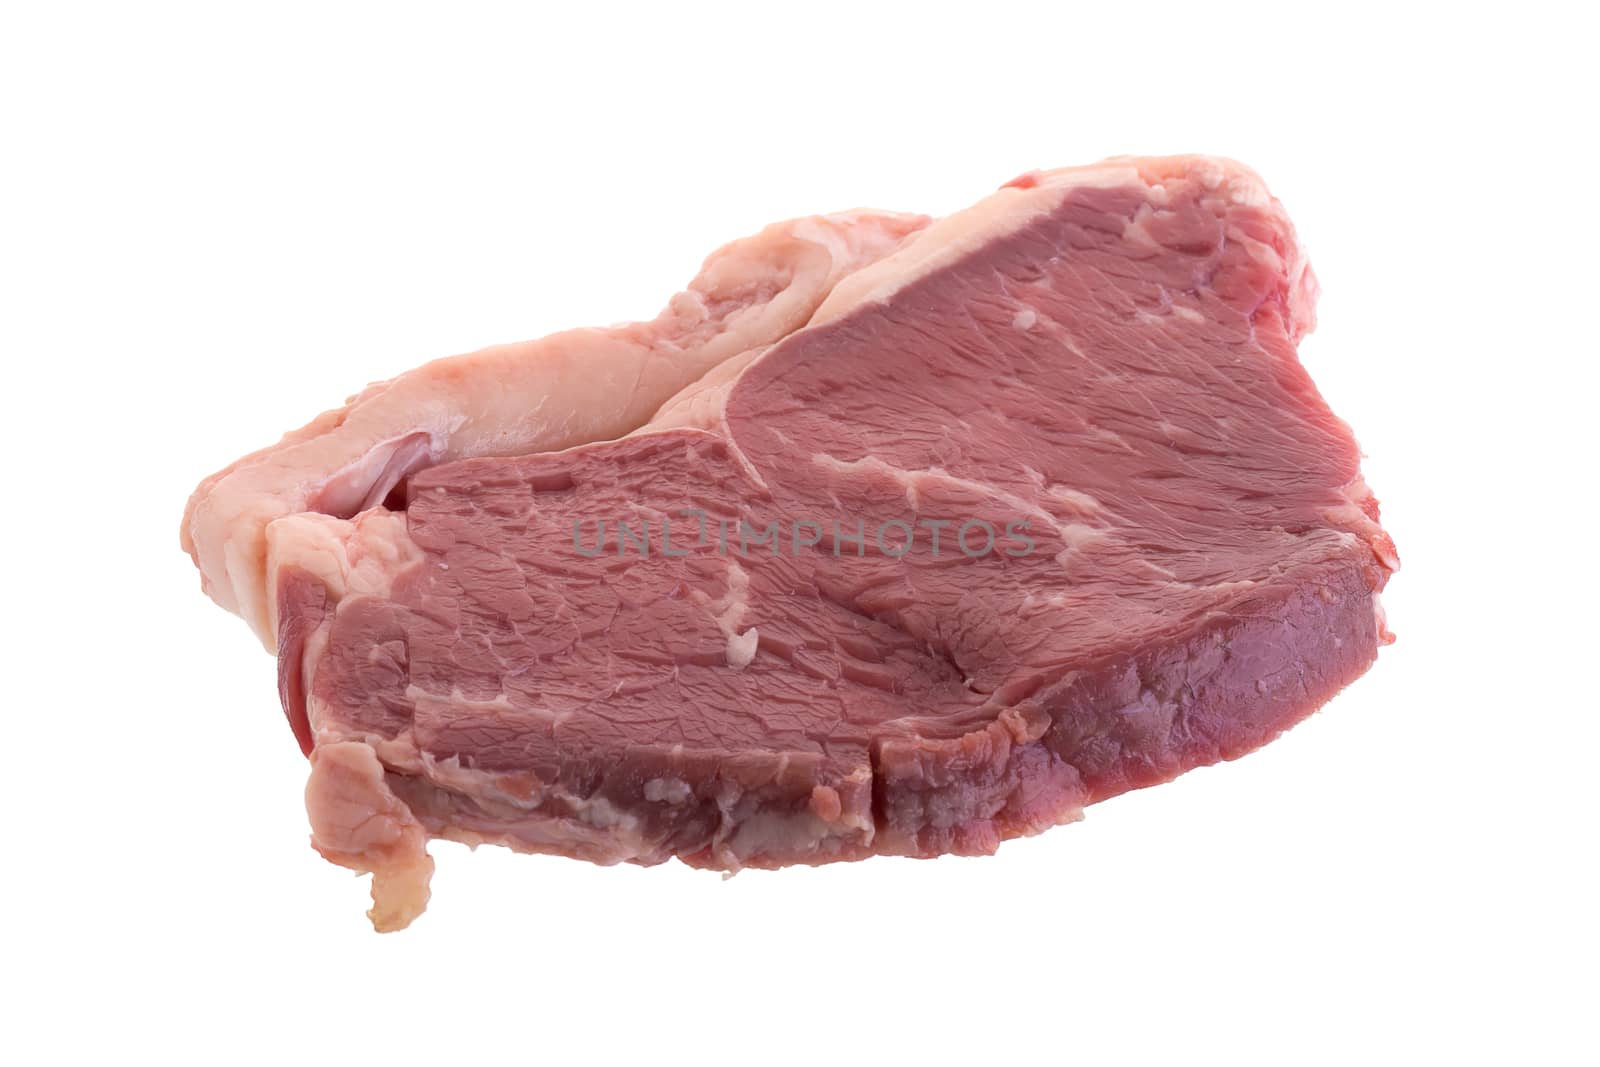 Raw fresh beef steaks, fresh sirloin steaks.